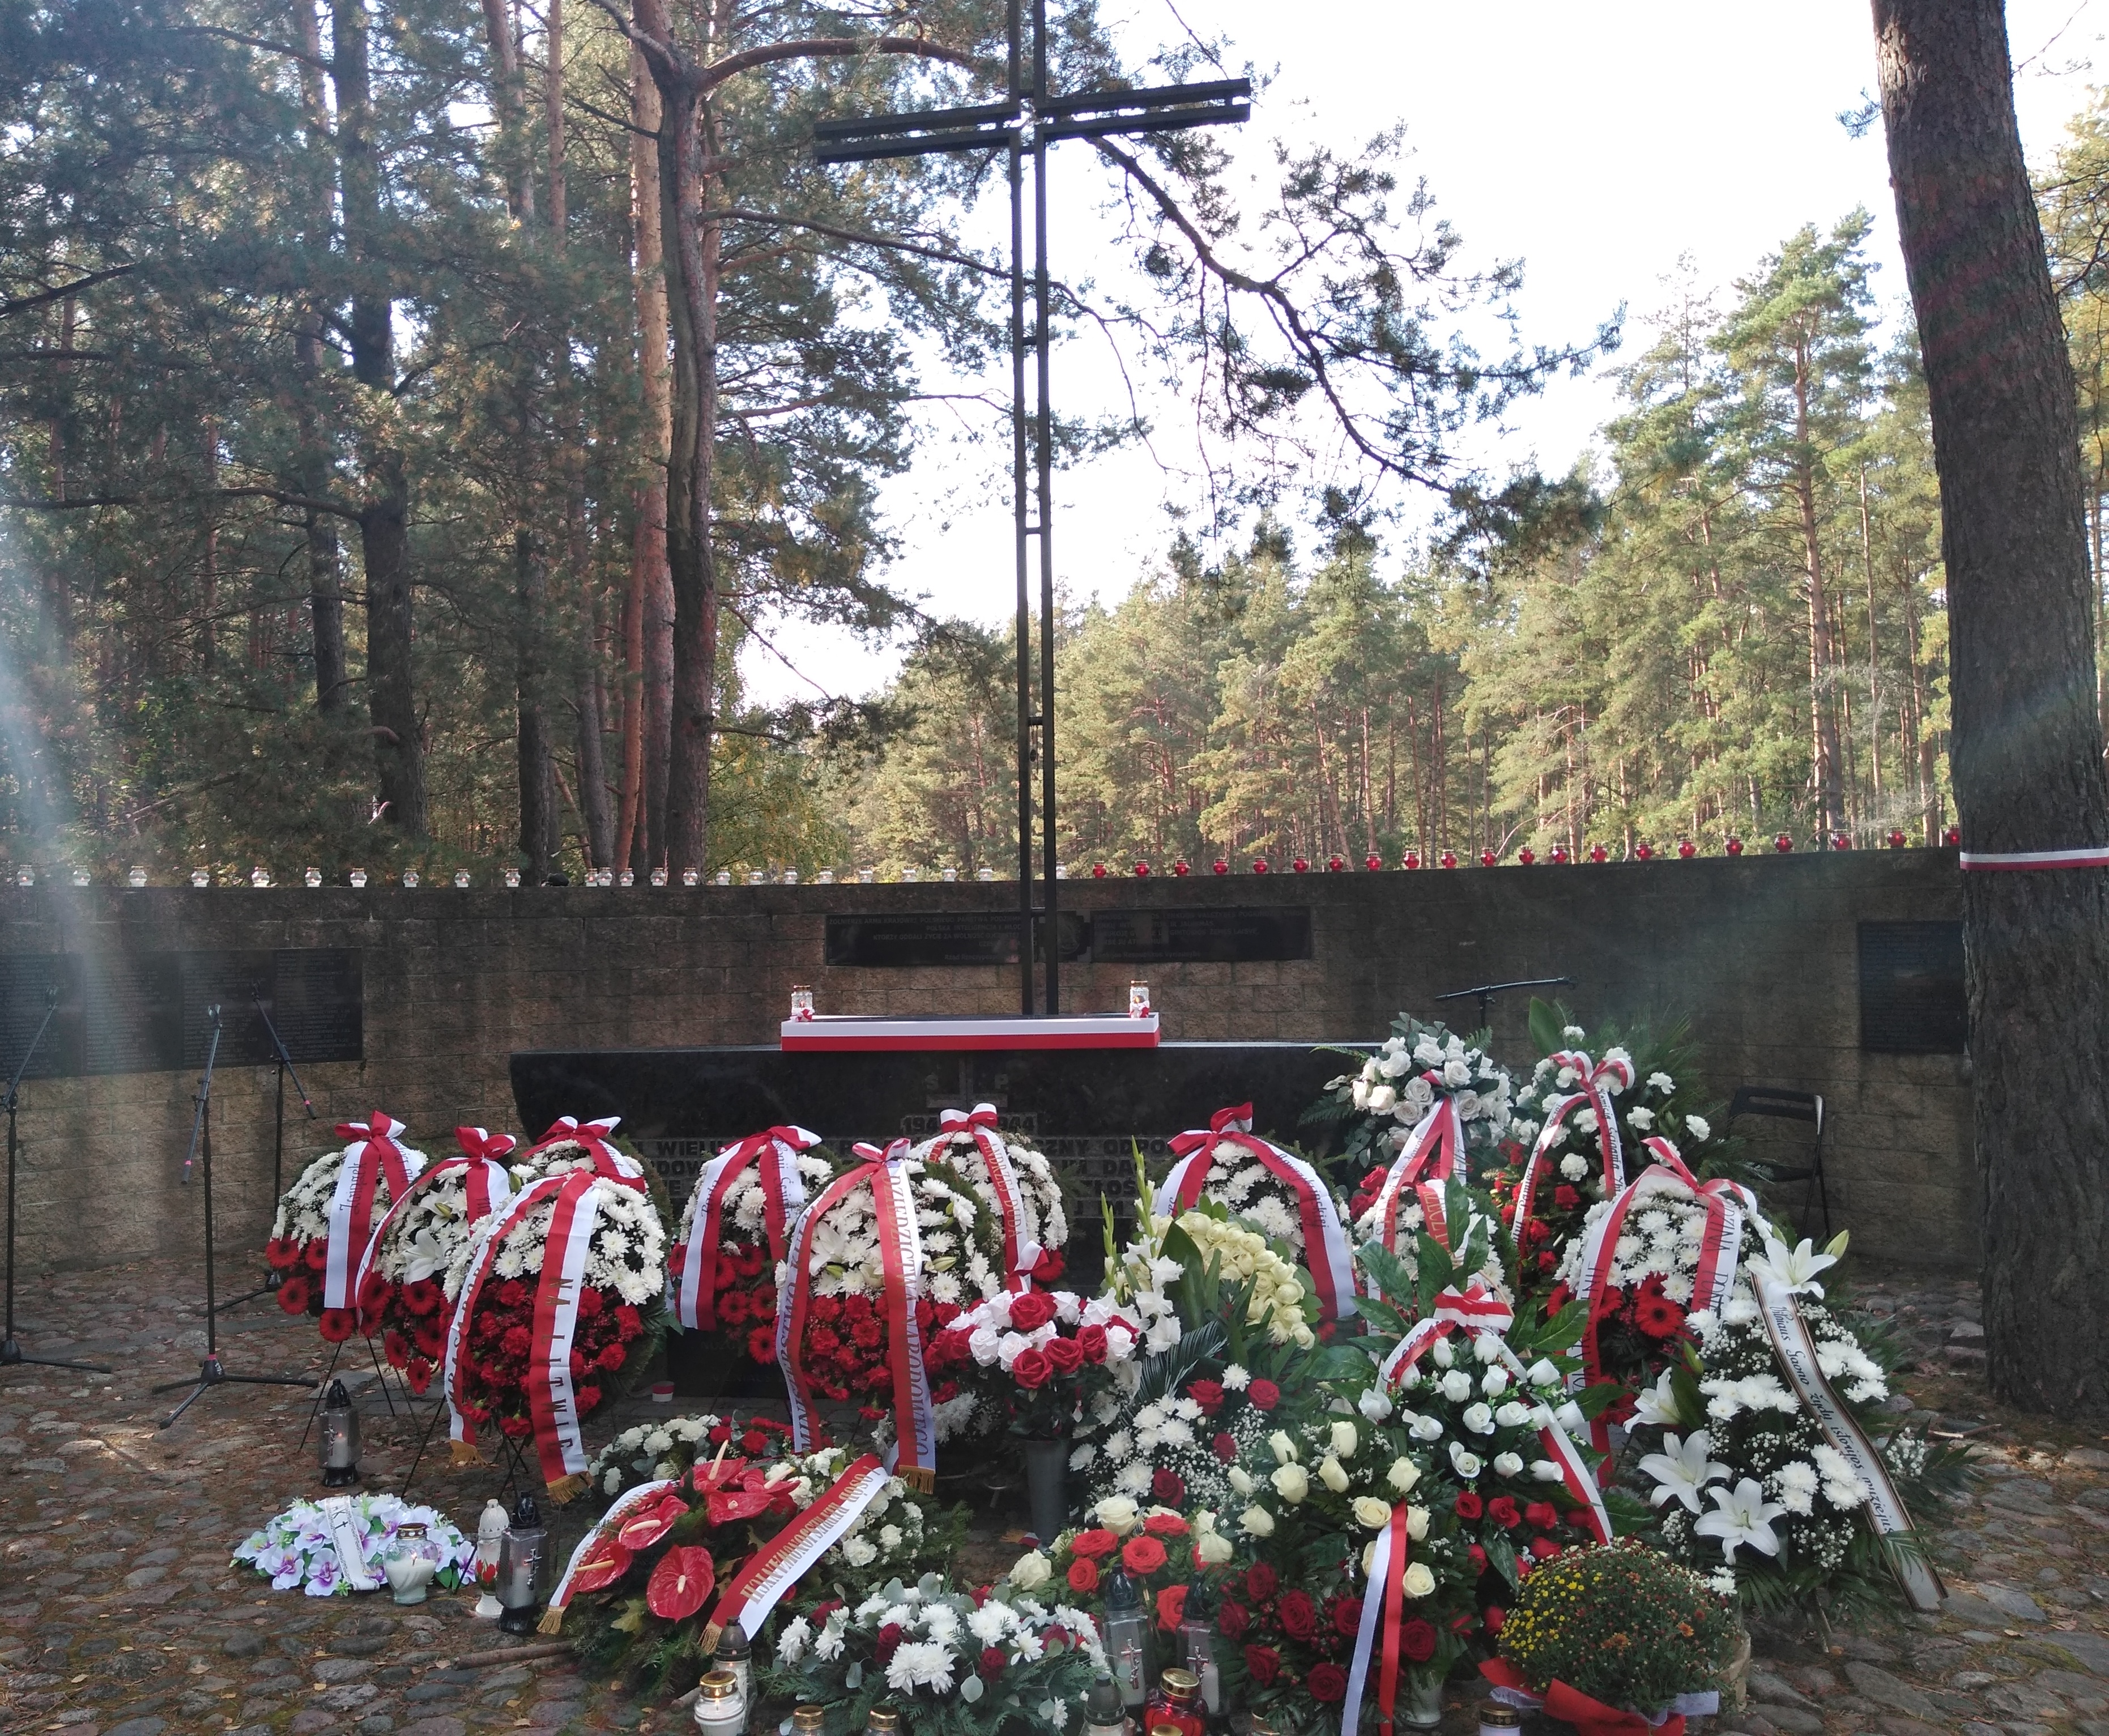 Paneriu Memorialas - Complexe commémoratif de Ponary, commémorant les victimes du nazisme pendant la Seconde Guerre mondiale